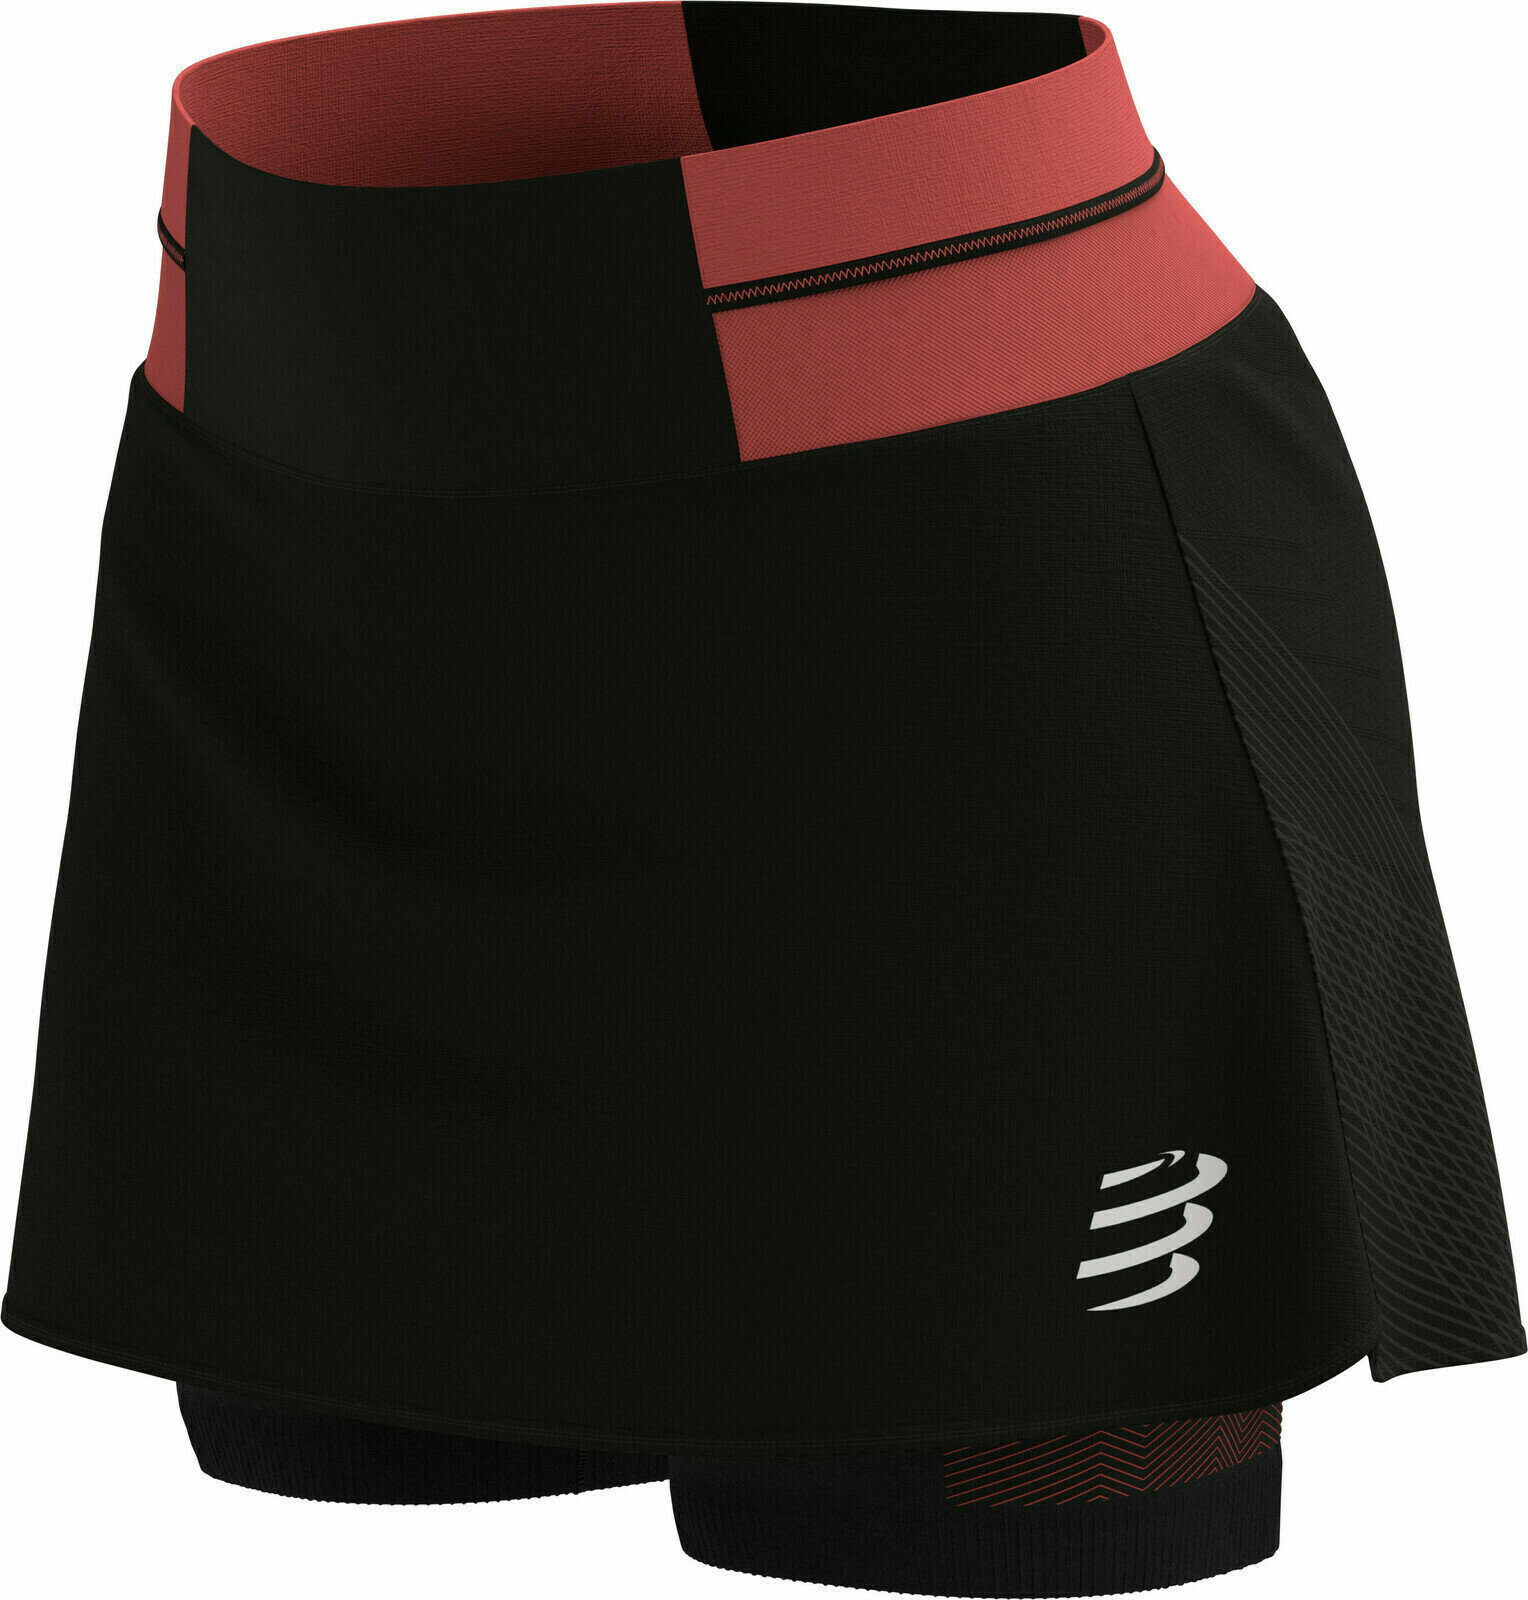 Σορτς Τρεξίματος Compressport Performance Skirt Black/Coral M Σορτς Τρεξίματος